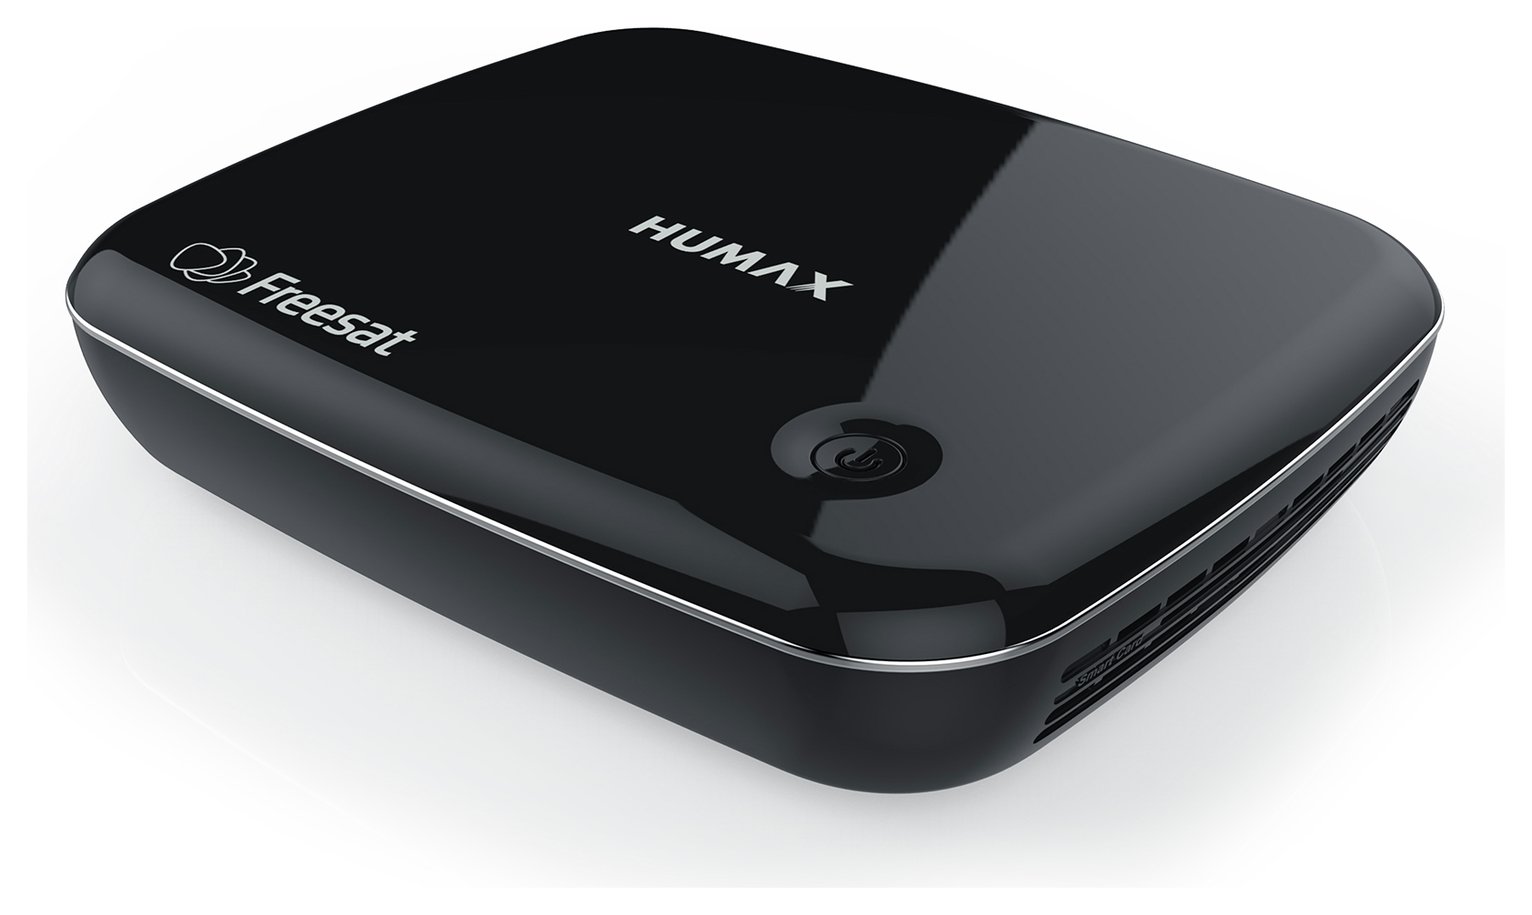 Humax HB-1100S Freesat Box. Review